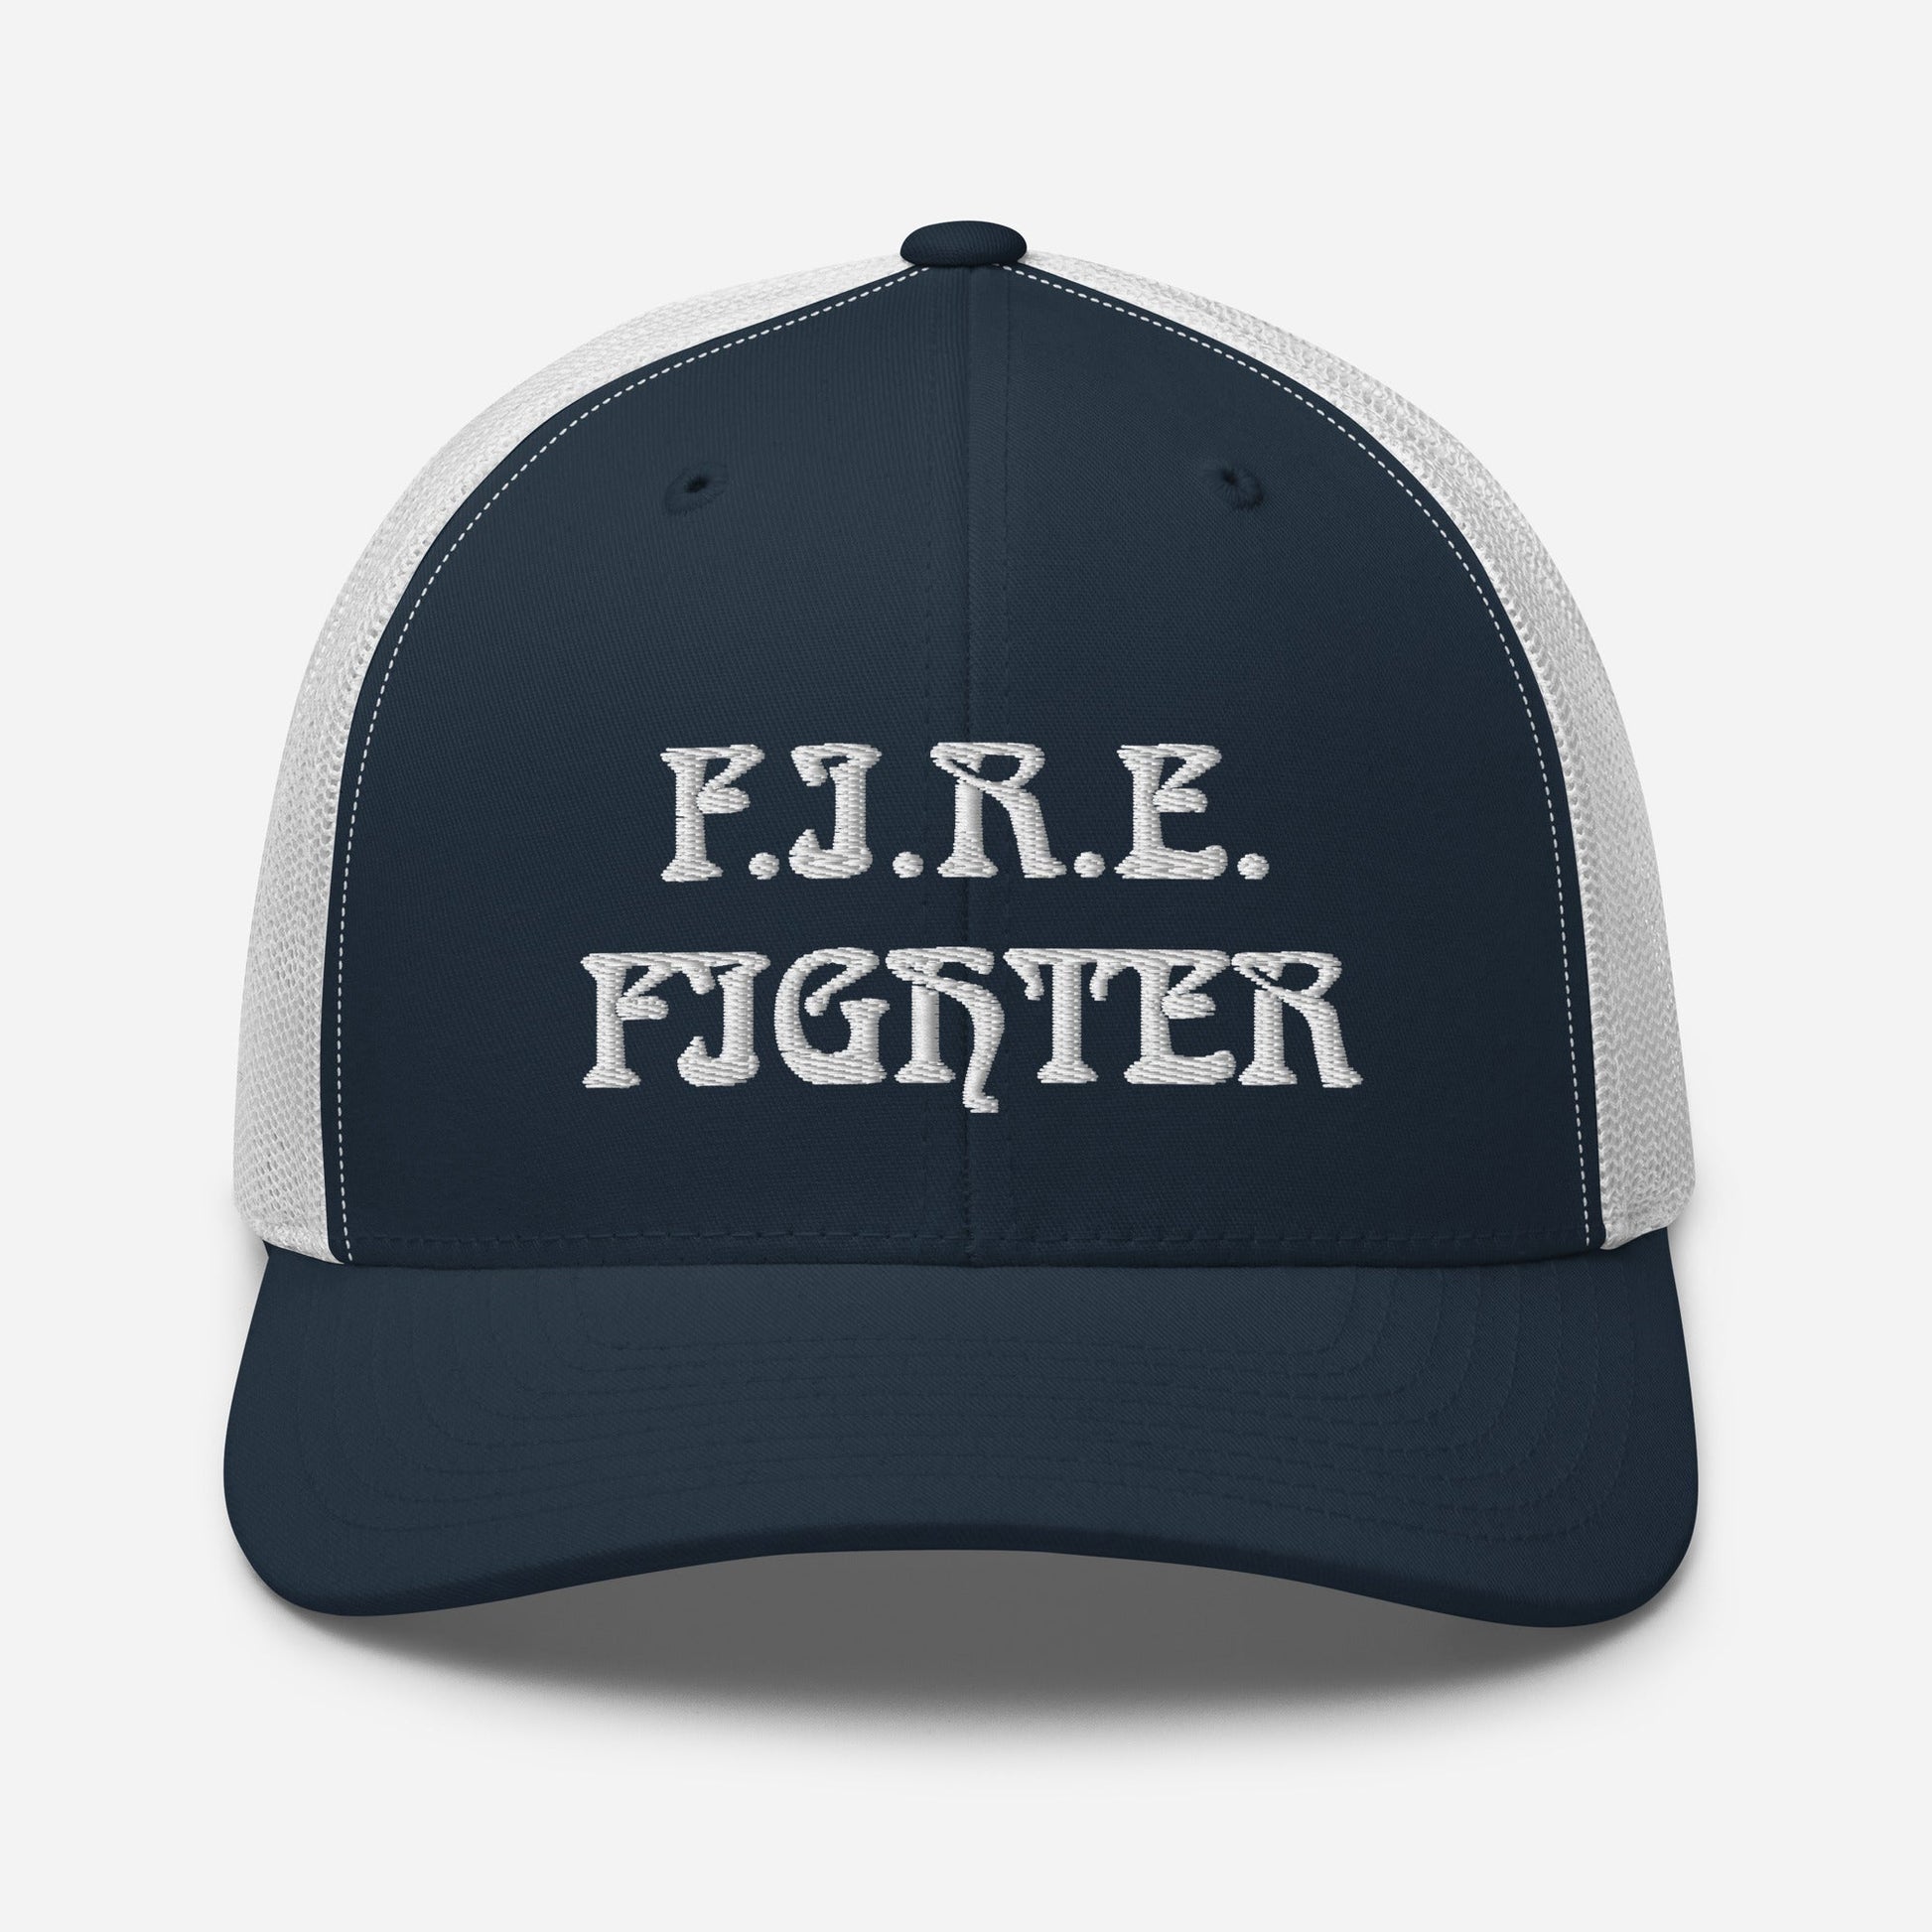 F.I.R.E FIGHTER - Six-panel retro Trucker Cap